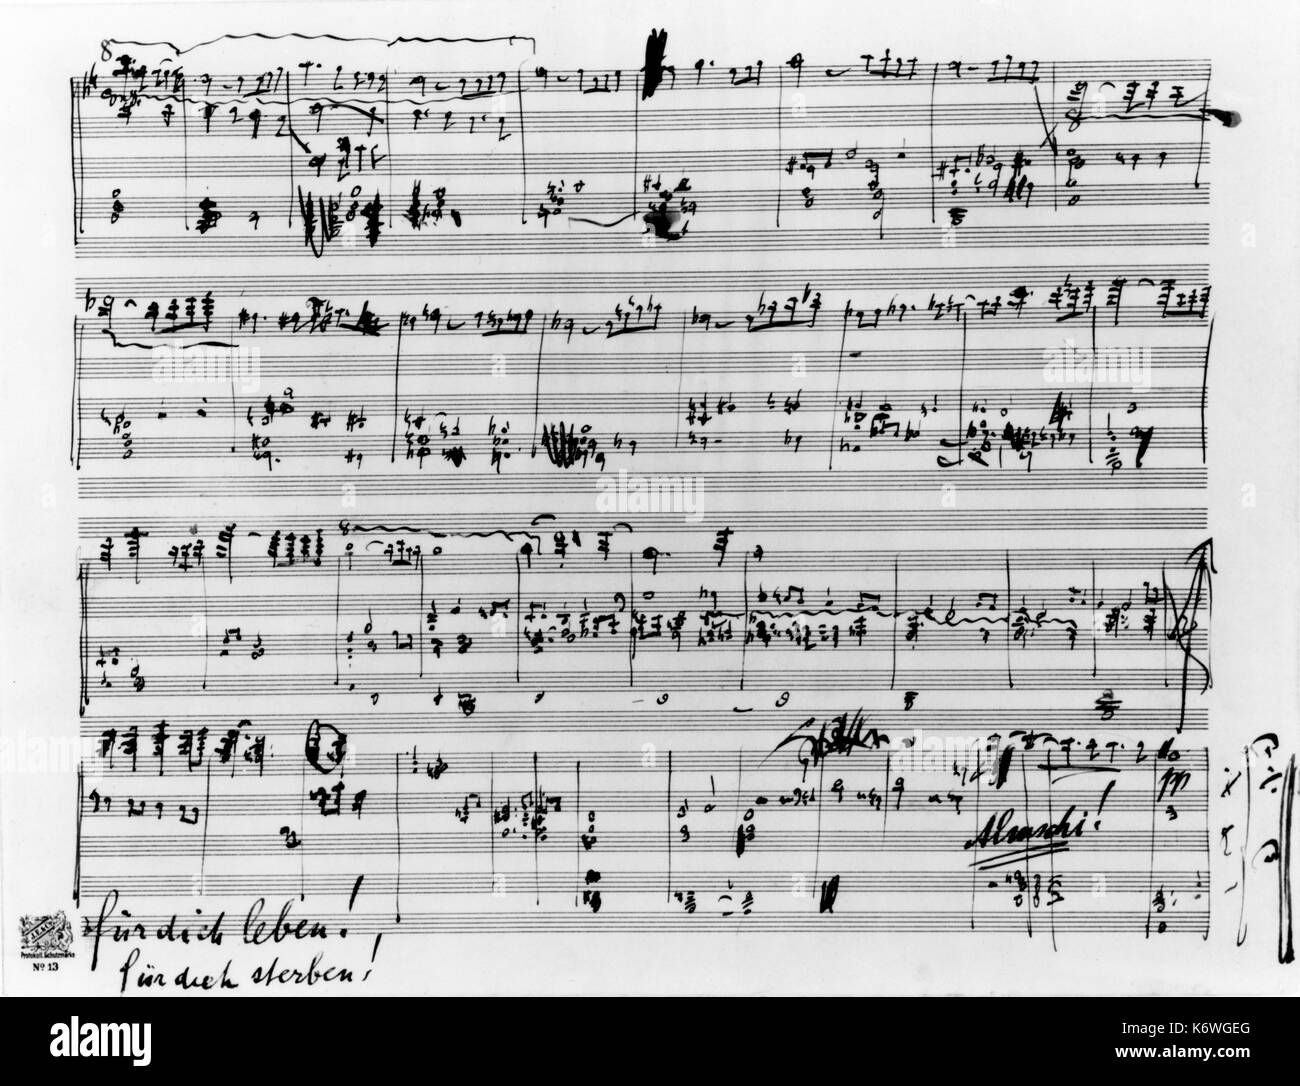 Gustav Mahler - Sinfonie 10 autographe Partitur - Ende der letzten Bewegung. "Für dich leben! Für dich sterben" in Mahlers Handschrift unter Ergebnis österreichische Komponist, 1860-1911 geschrieben Stockfoto